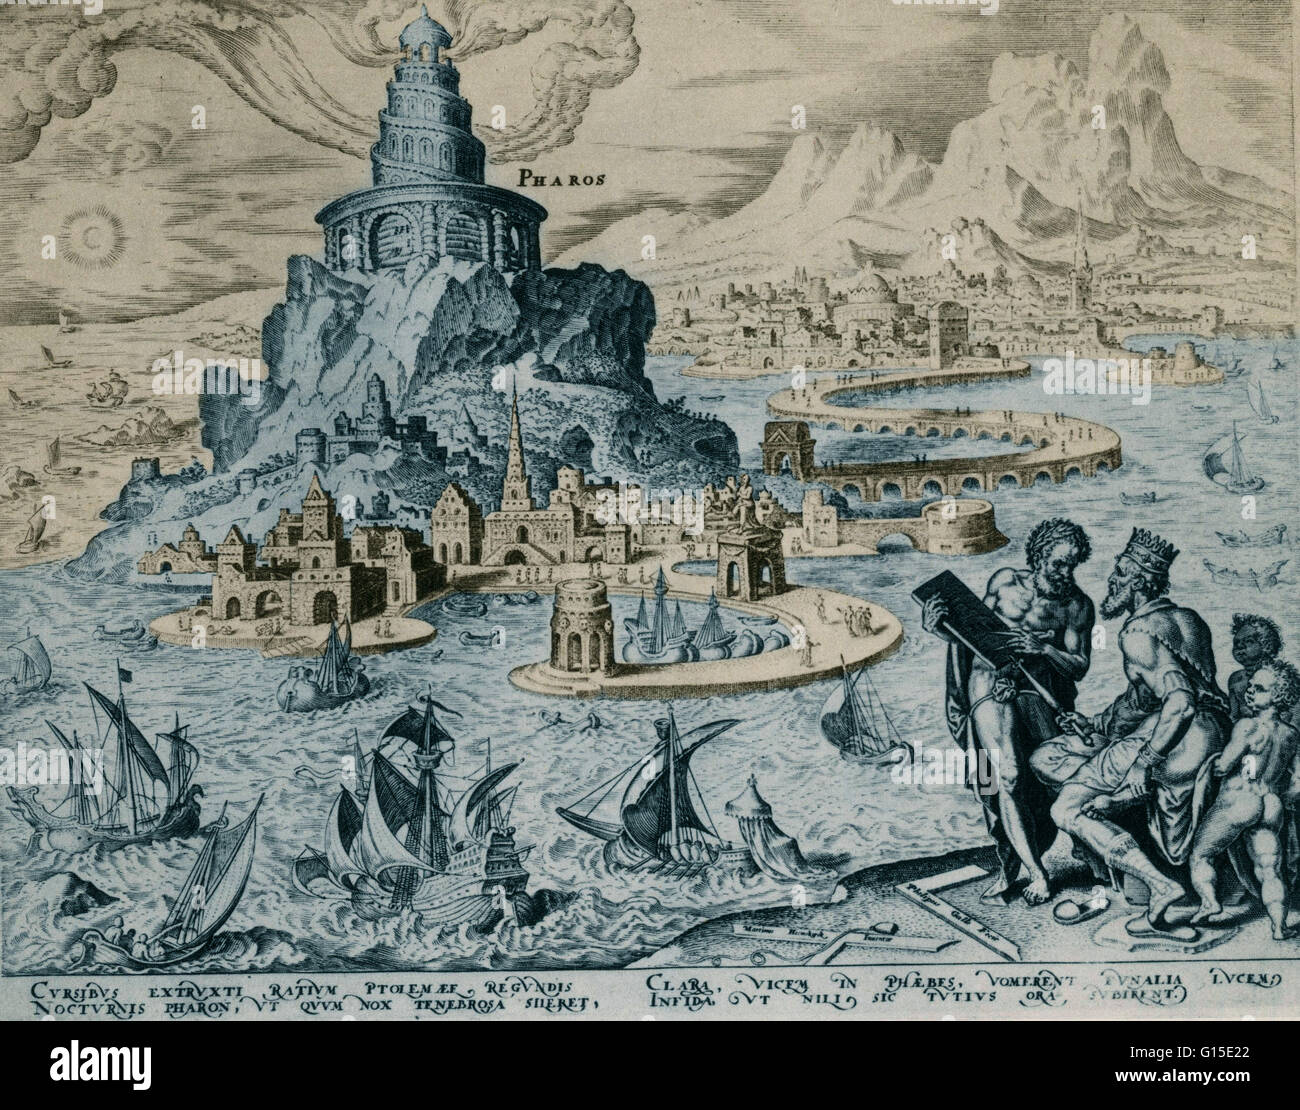 Sieben Wunder der Welt, gezeichnet von Marten van Heemskerck: Der Pharos von Alexandrien. Stich von Philipp Galle. 1567 der Leuchtturm in Alexandria, Ägypten wurde im 3. Jahrhundert v. Chr. gebaut. Die Höhe des Leuchtturms war schätzungsweise zwischen 380 und 44 Stockfoto